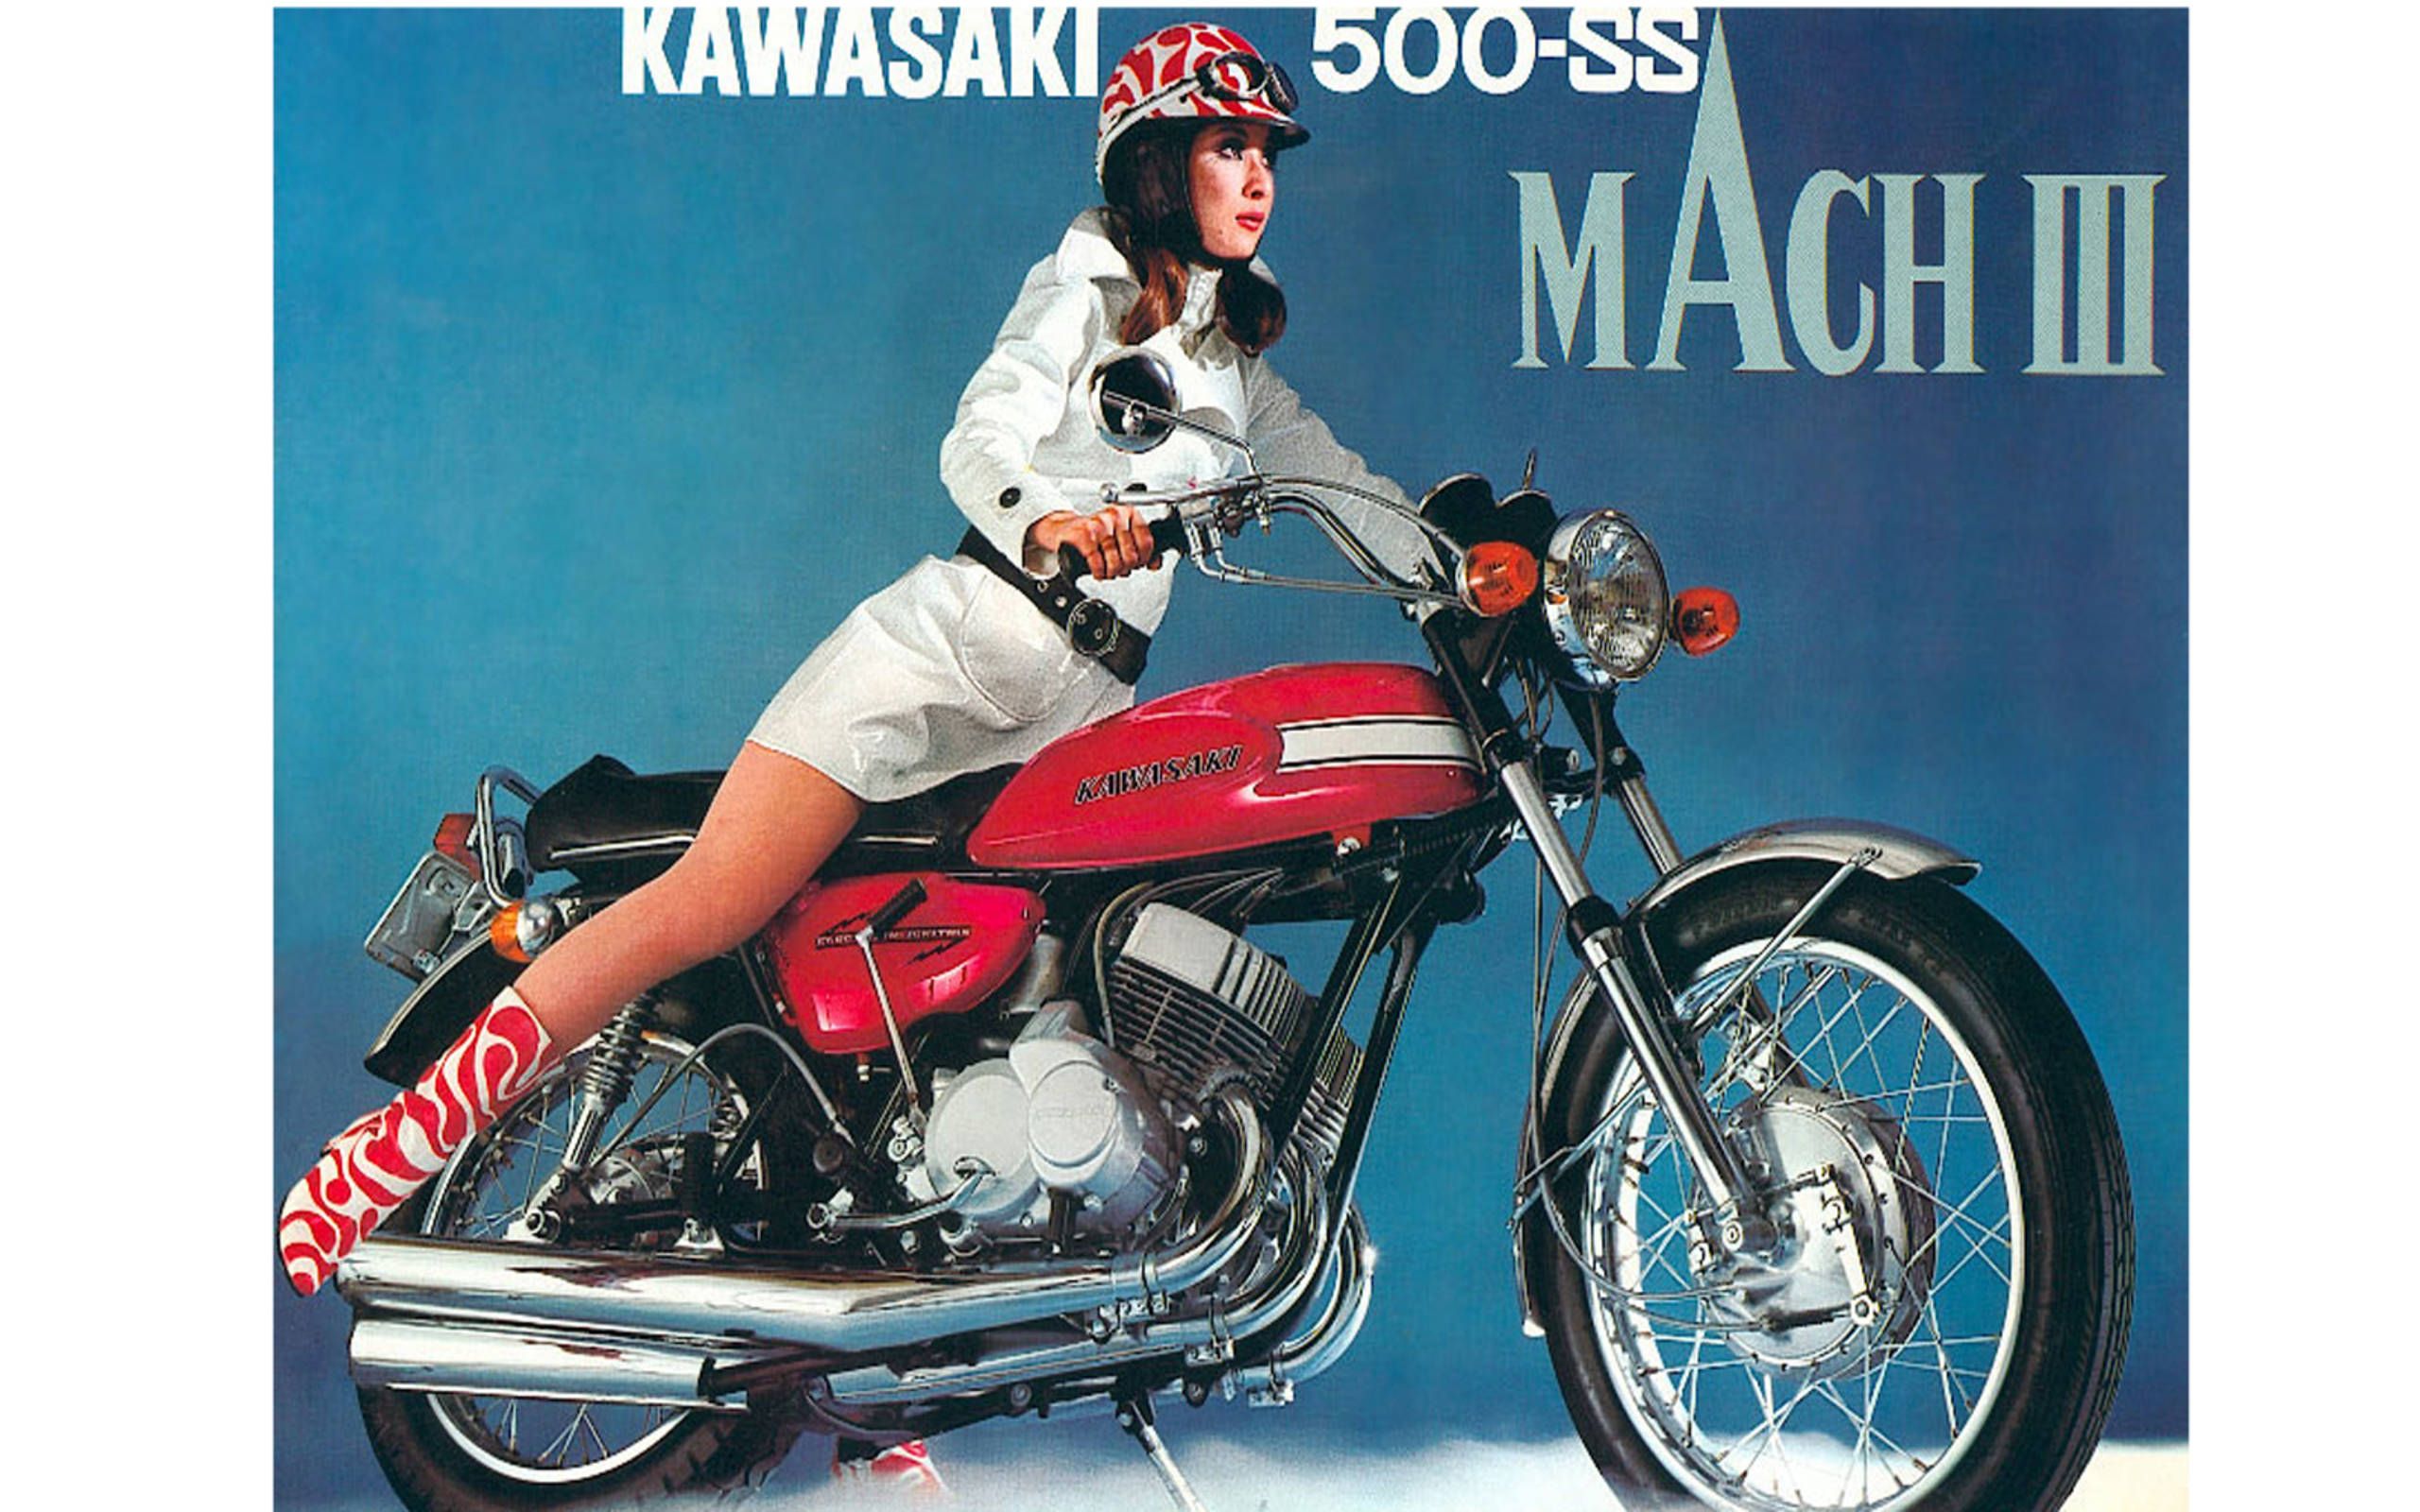 malm råolie Outlaw 1969-70 Kawasaki Mach III H1 500: Killer Kawasaki